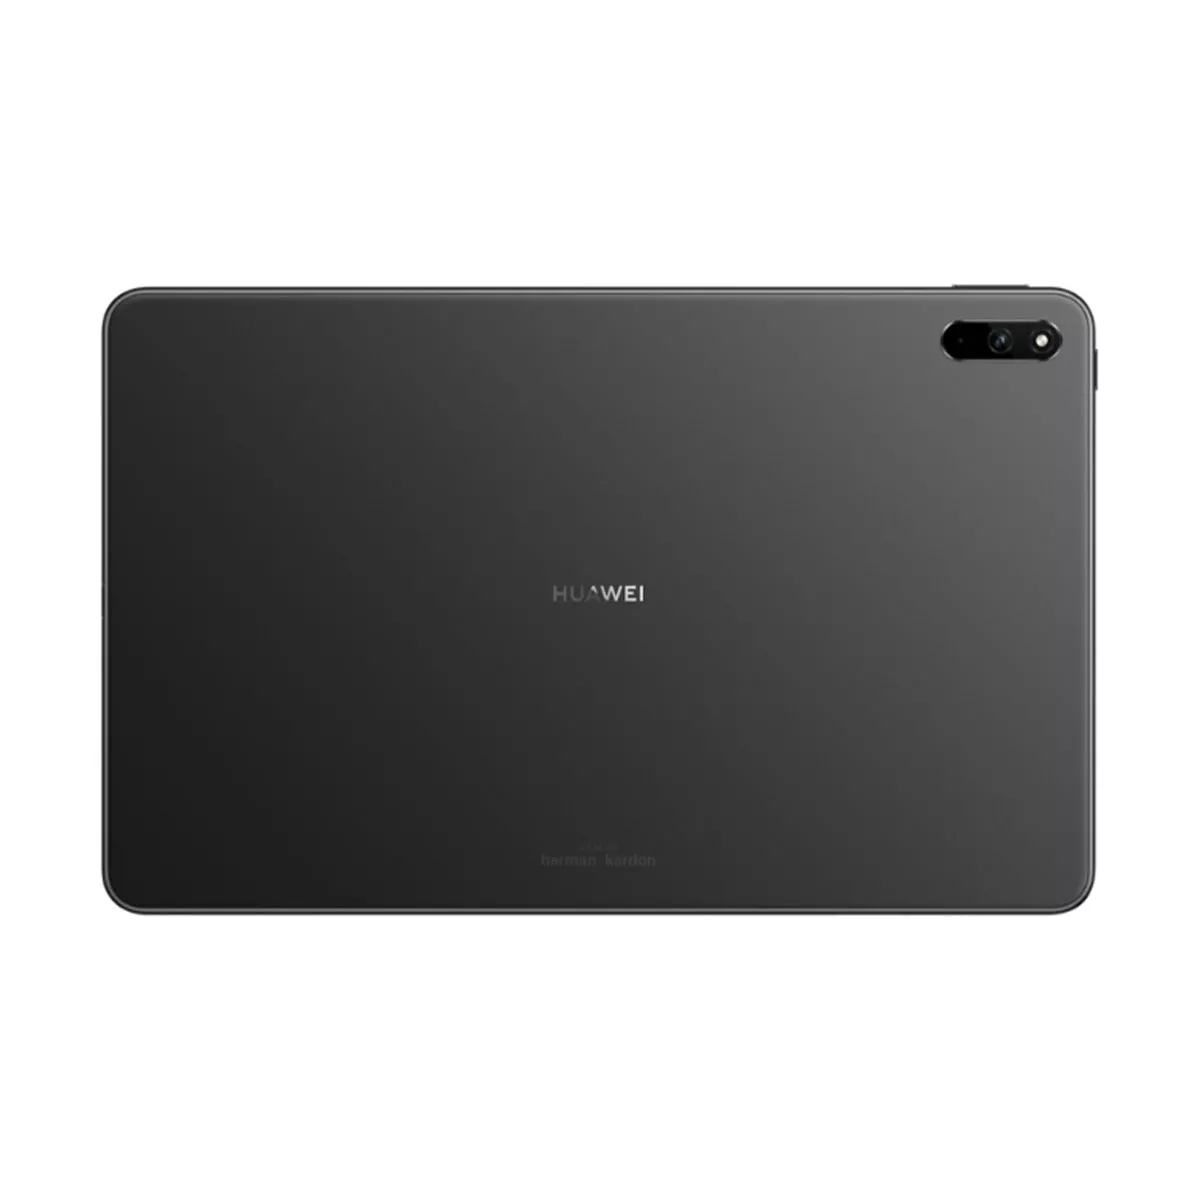 Buy Huawei MatePad 10.4 inch (4GB RAM + 64GB Memory) BAH4-L09